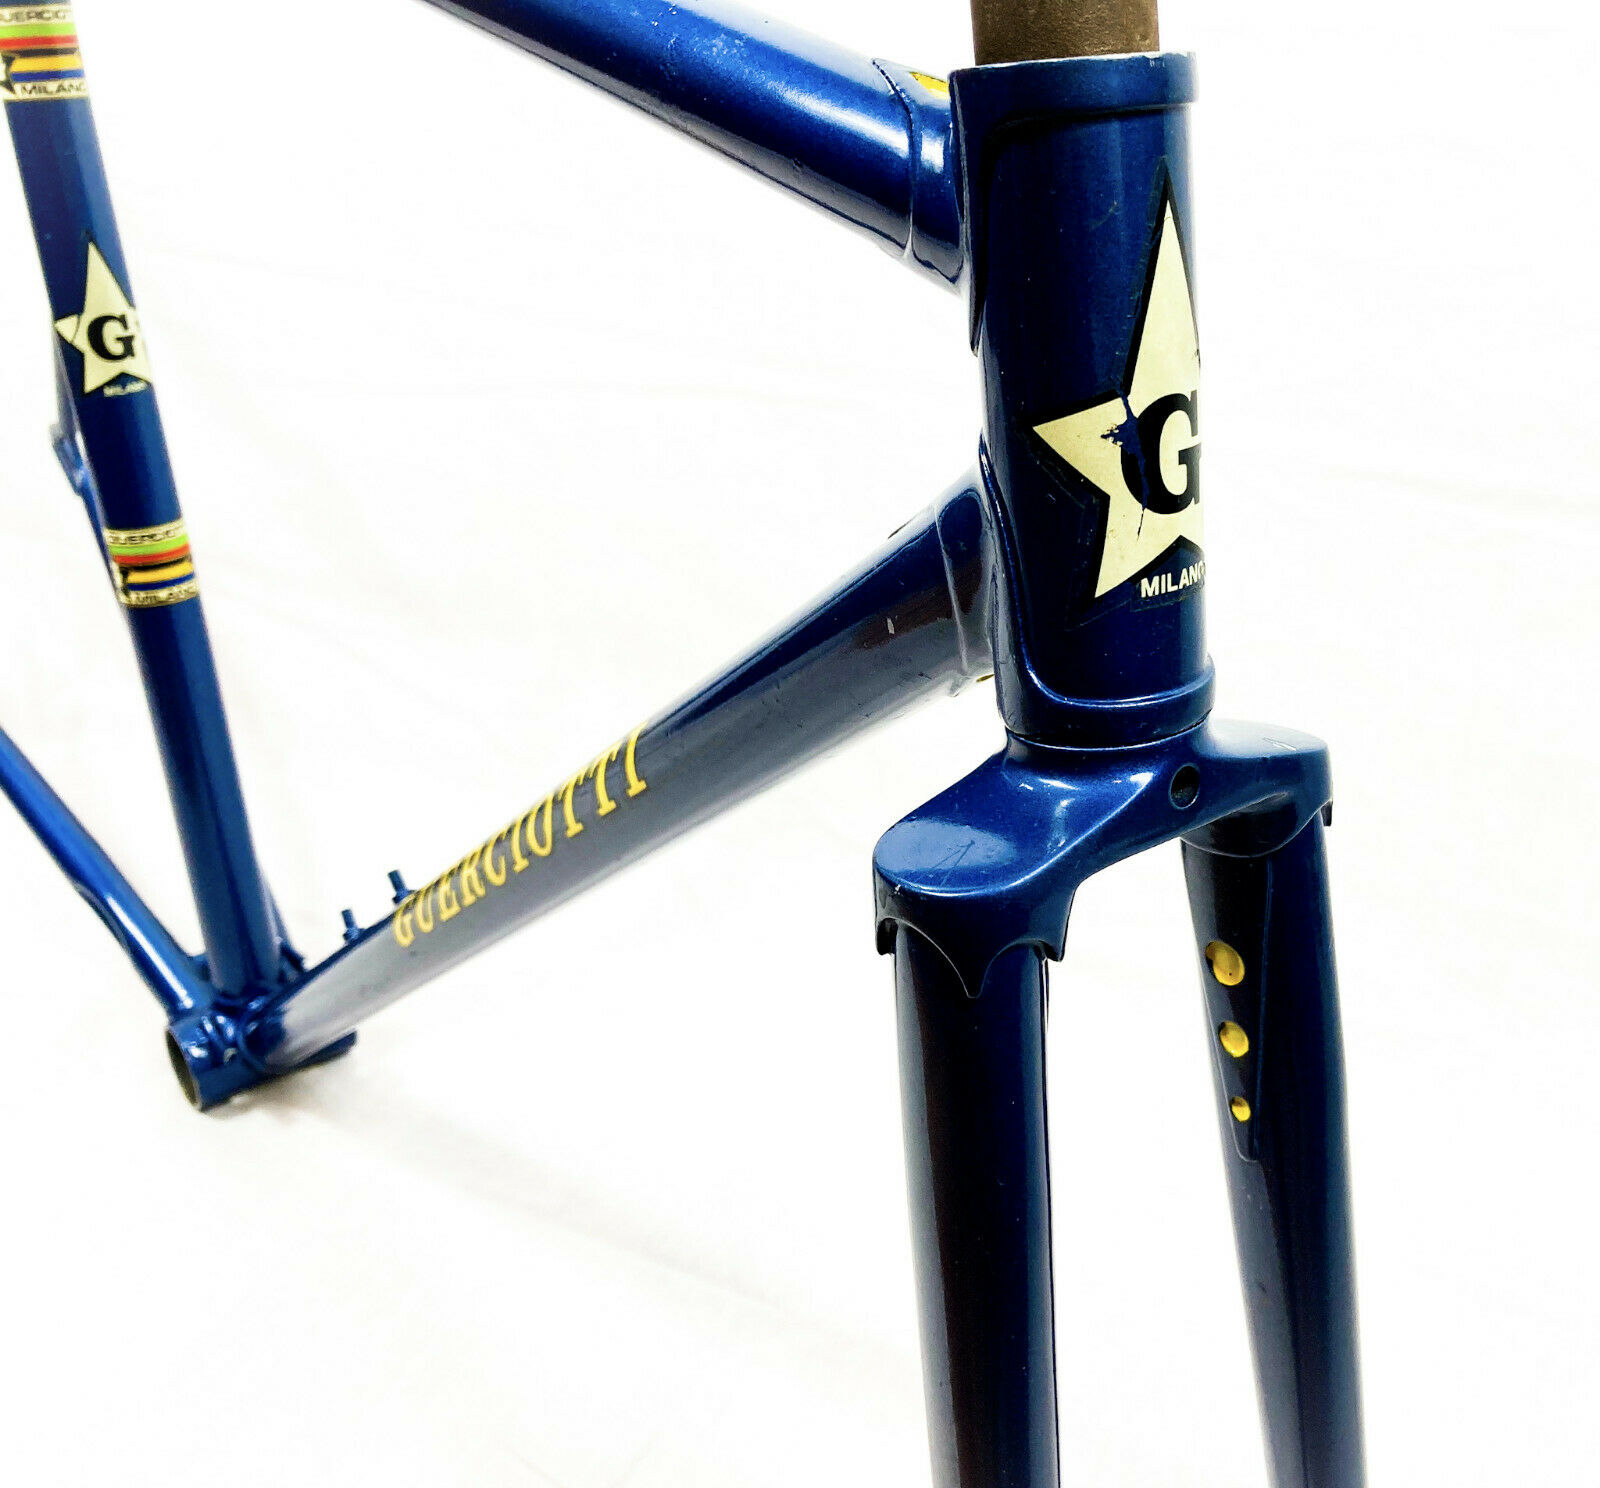 51cm-Guerciotti-steel-frame-by-Losa-1970s-Fahrradrahmen-_1bebf2a52f30e04f3dc873d2192f3f98.jpg